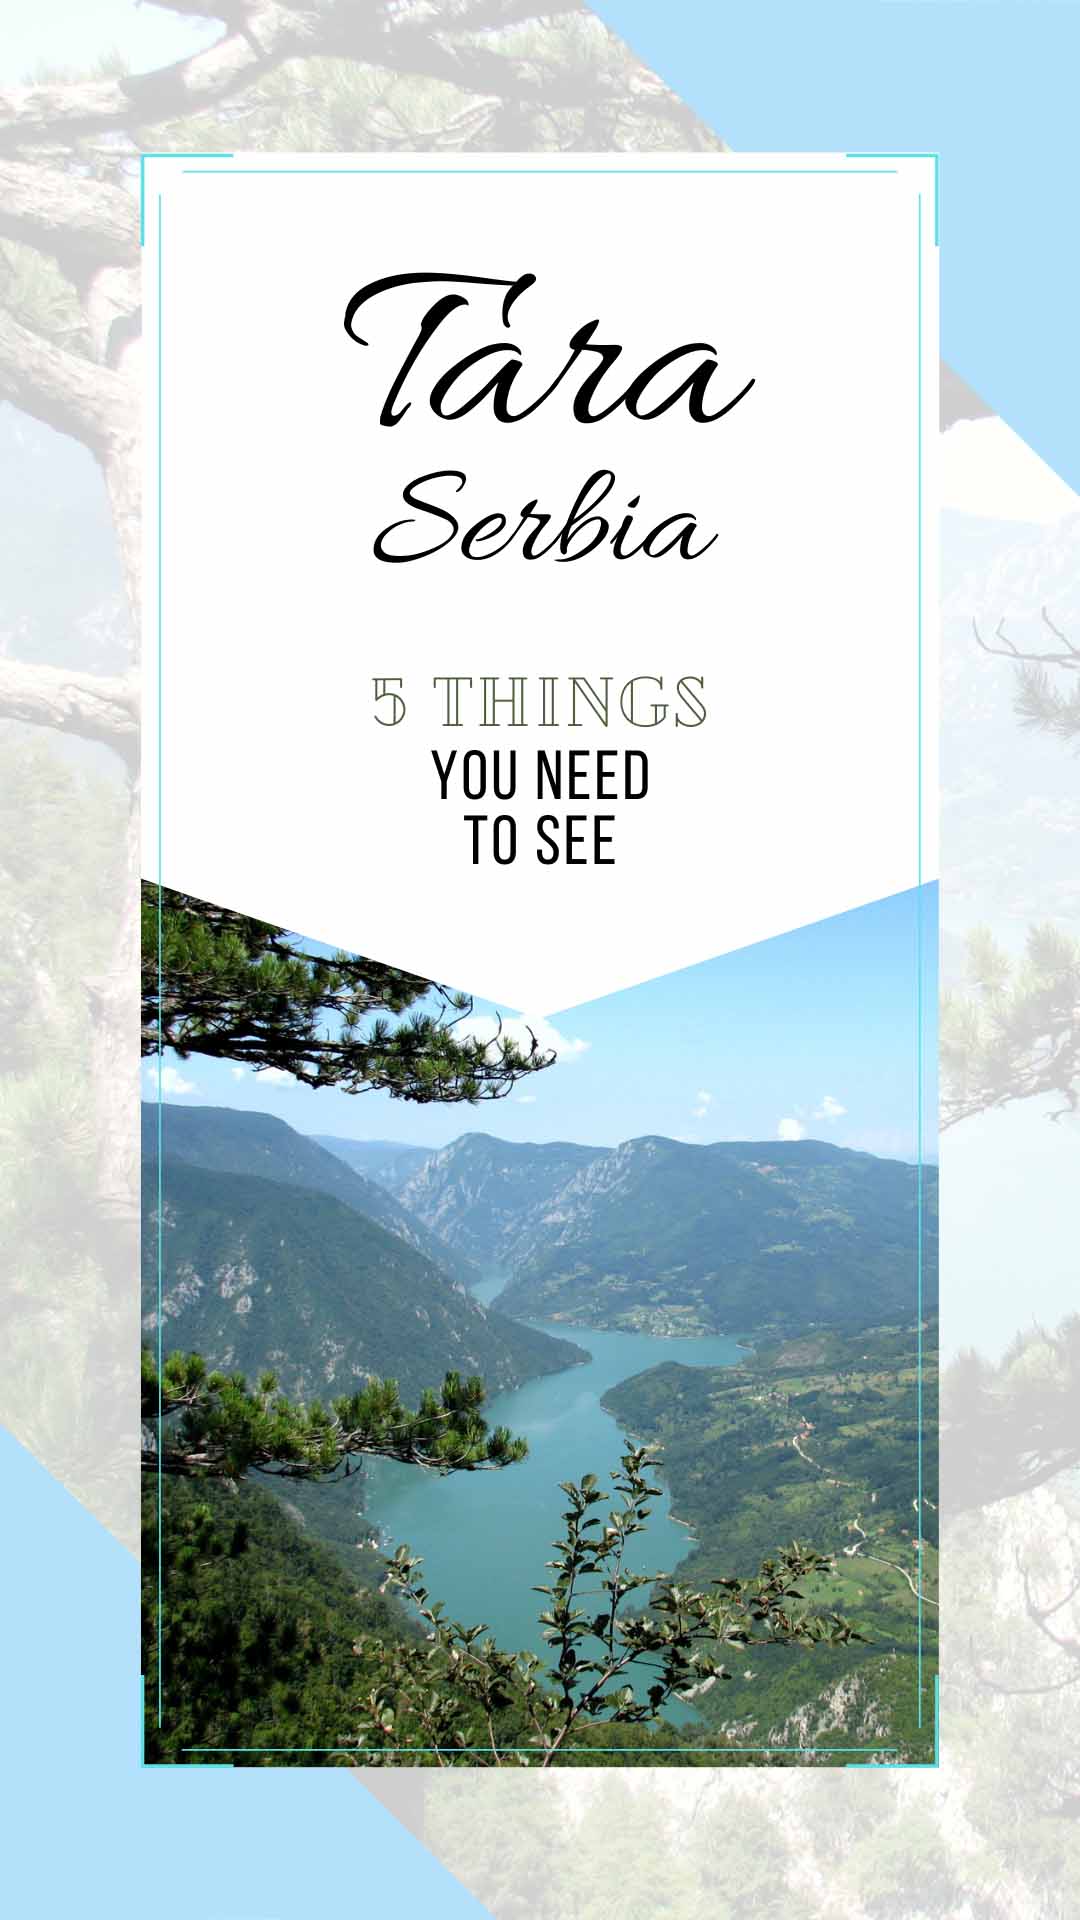 TARA SERBIA: Five things you need to see